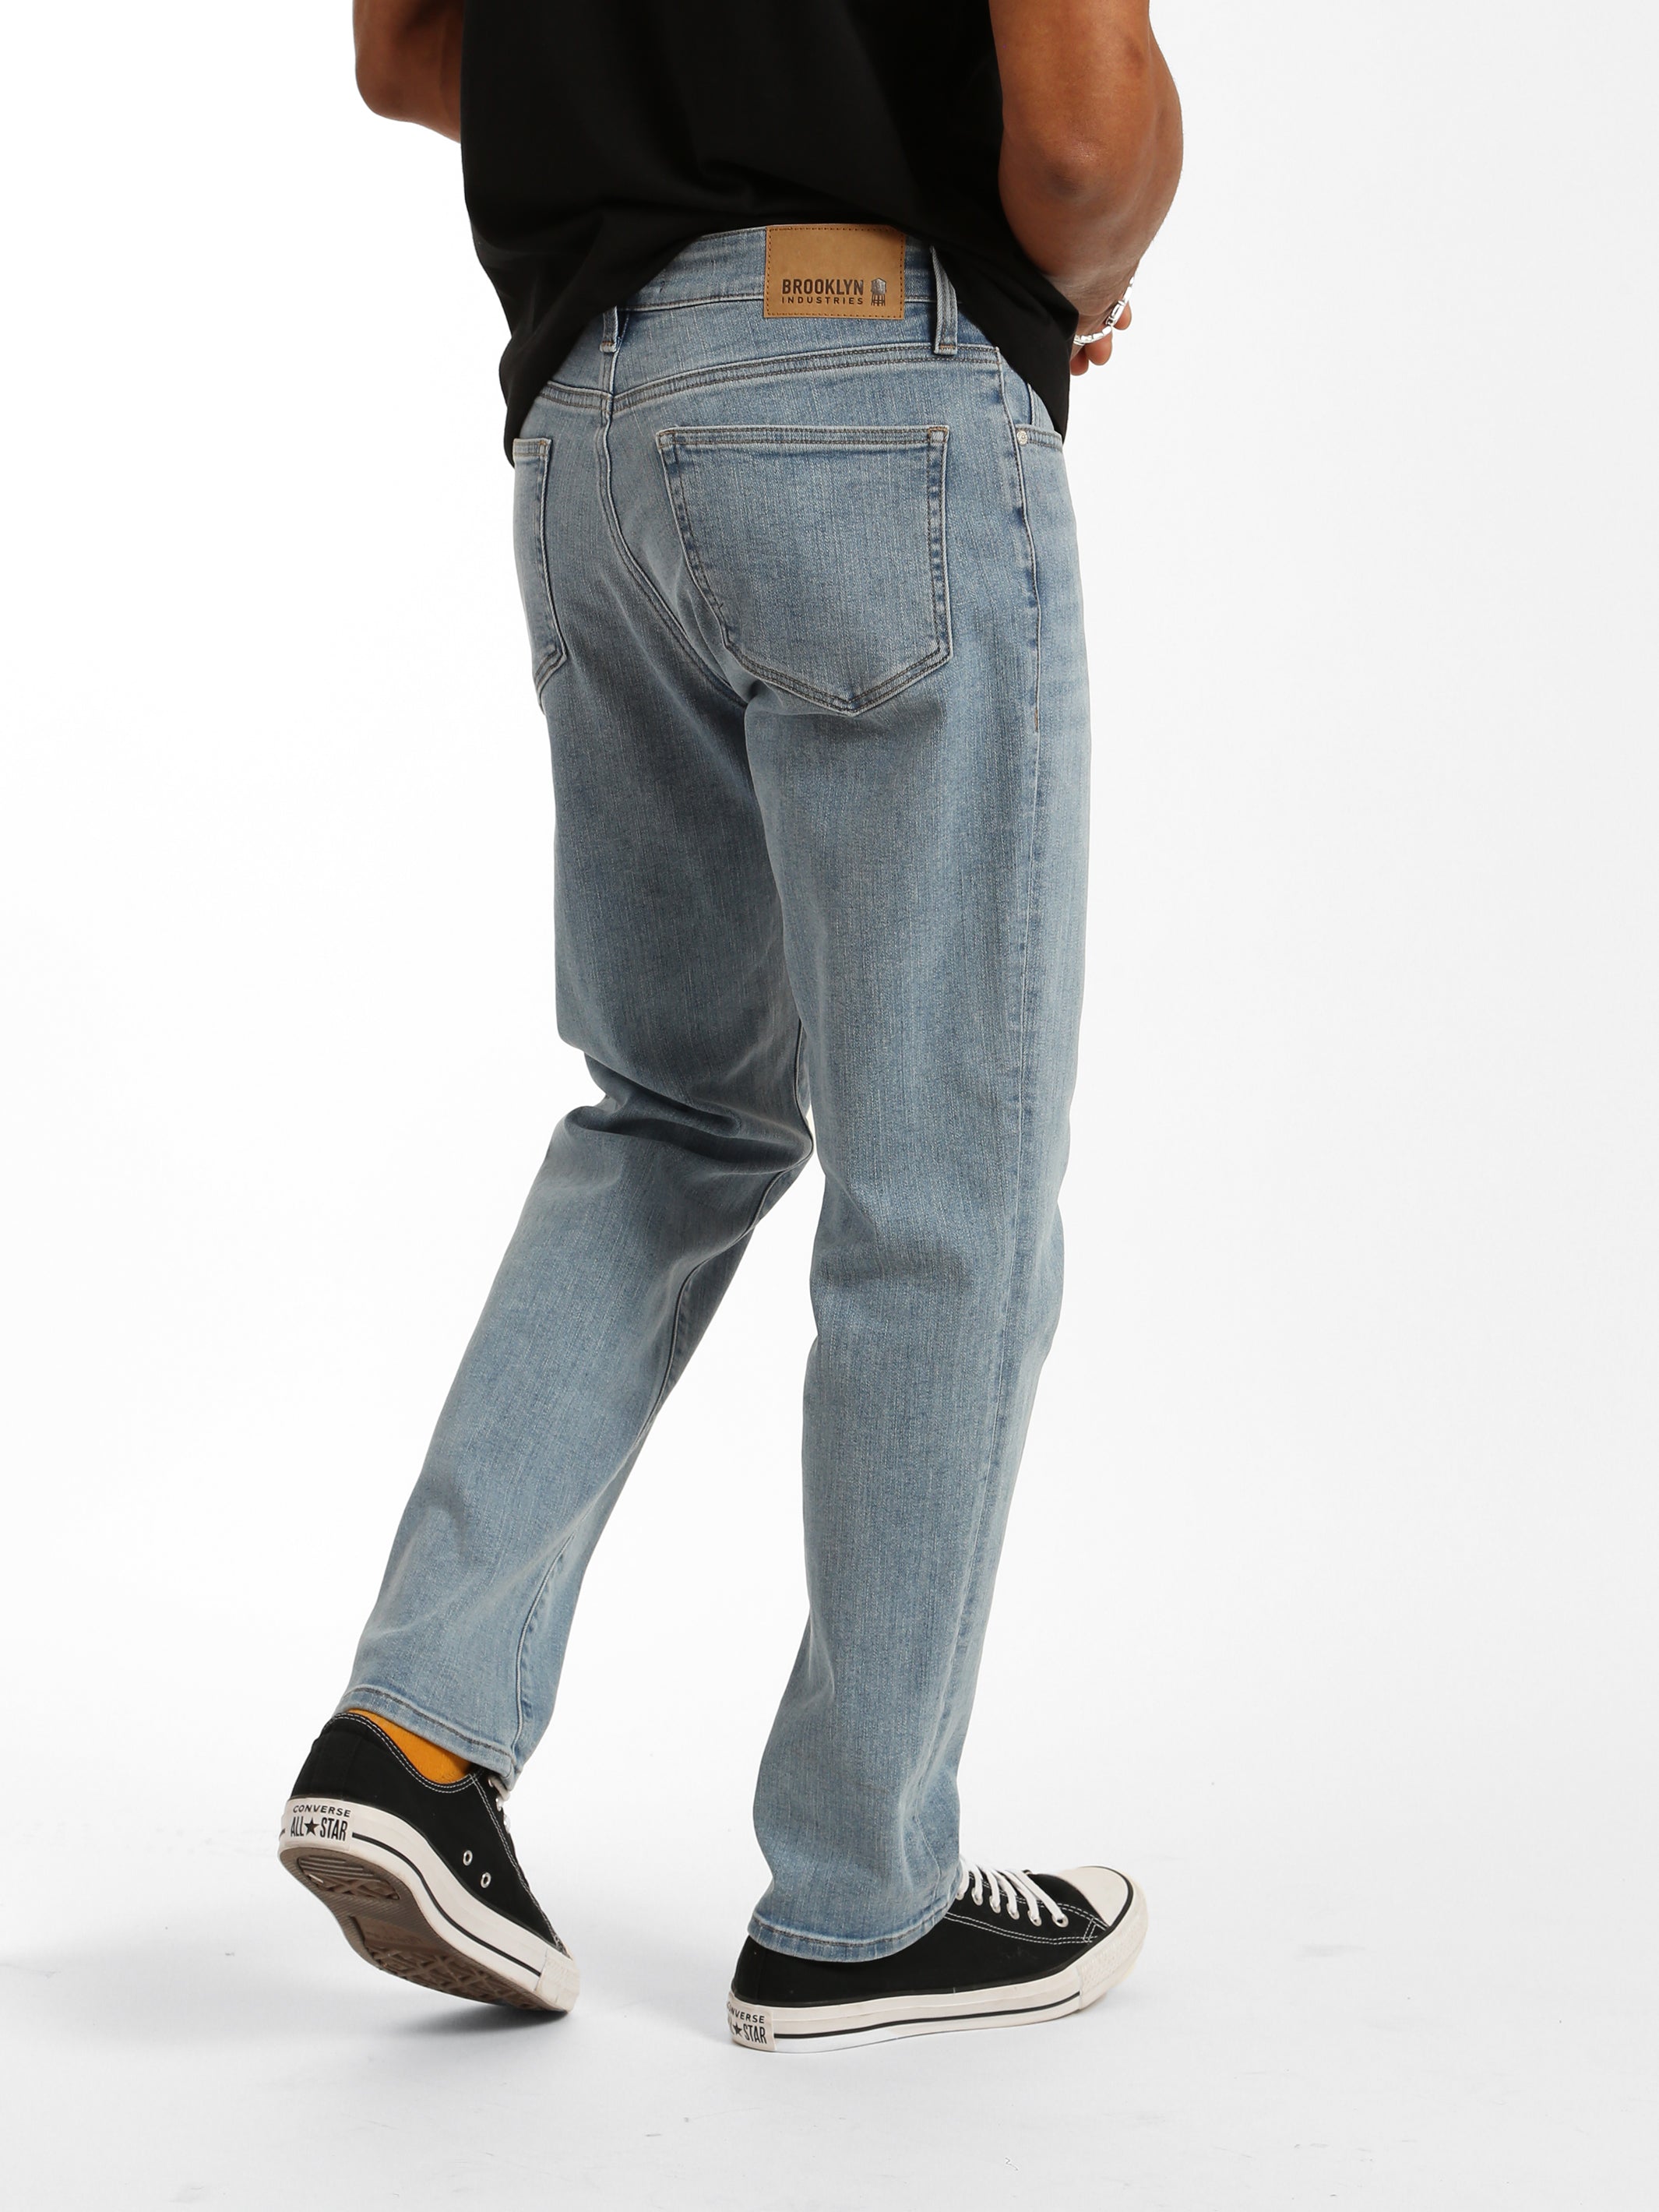 Franklin Athletic Fit Jeans in Light Brushed Denim